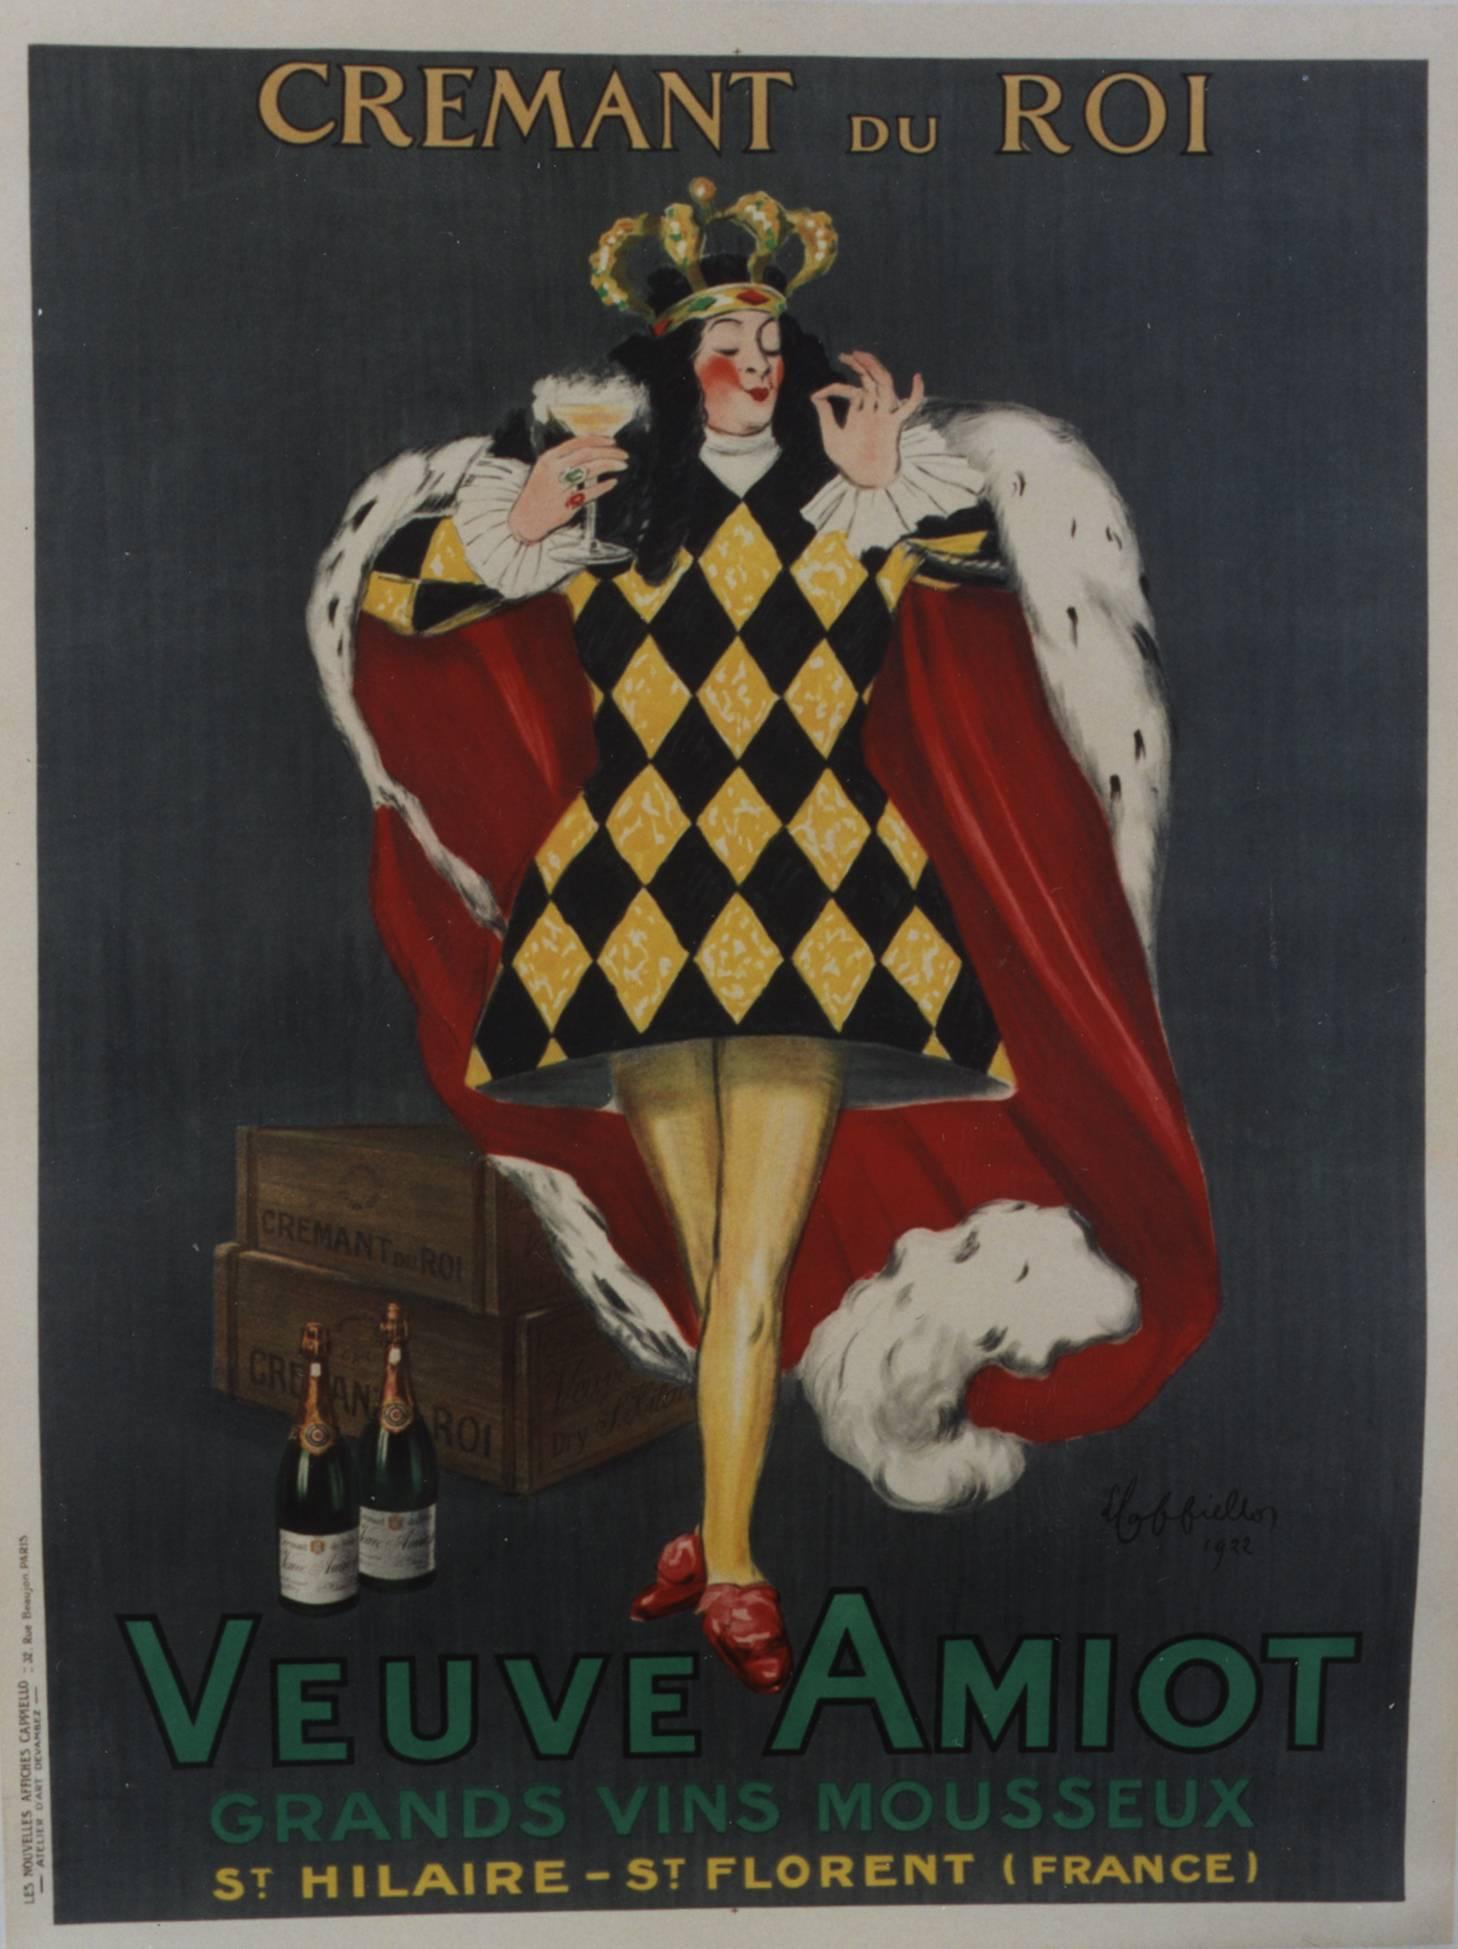 Cremant du Roi/Veuve Amiot, 1922. Color lithograph - Print by Leonetto Cappiello